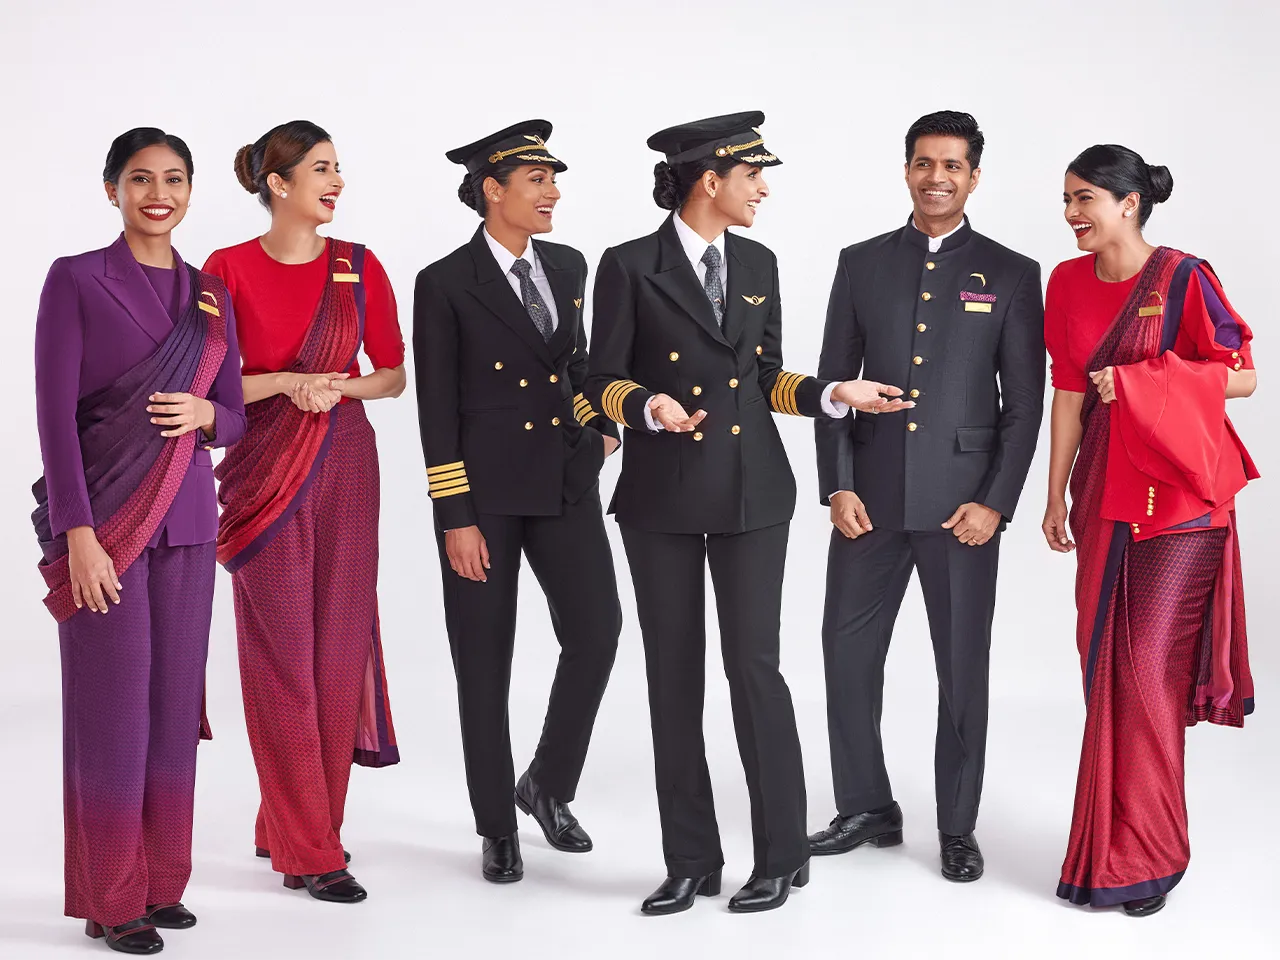 Air India unveils fashion-forward crew uniforms crafted by Manish Malhotra